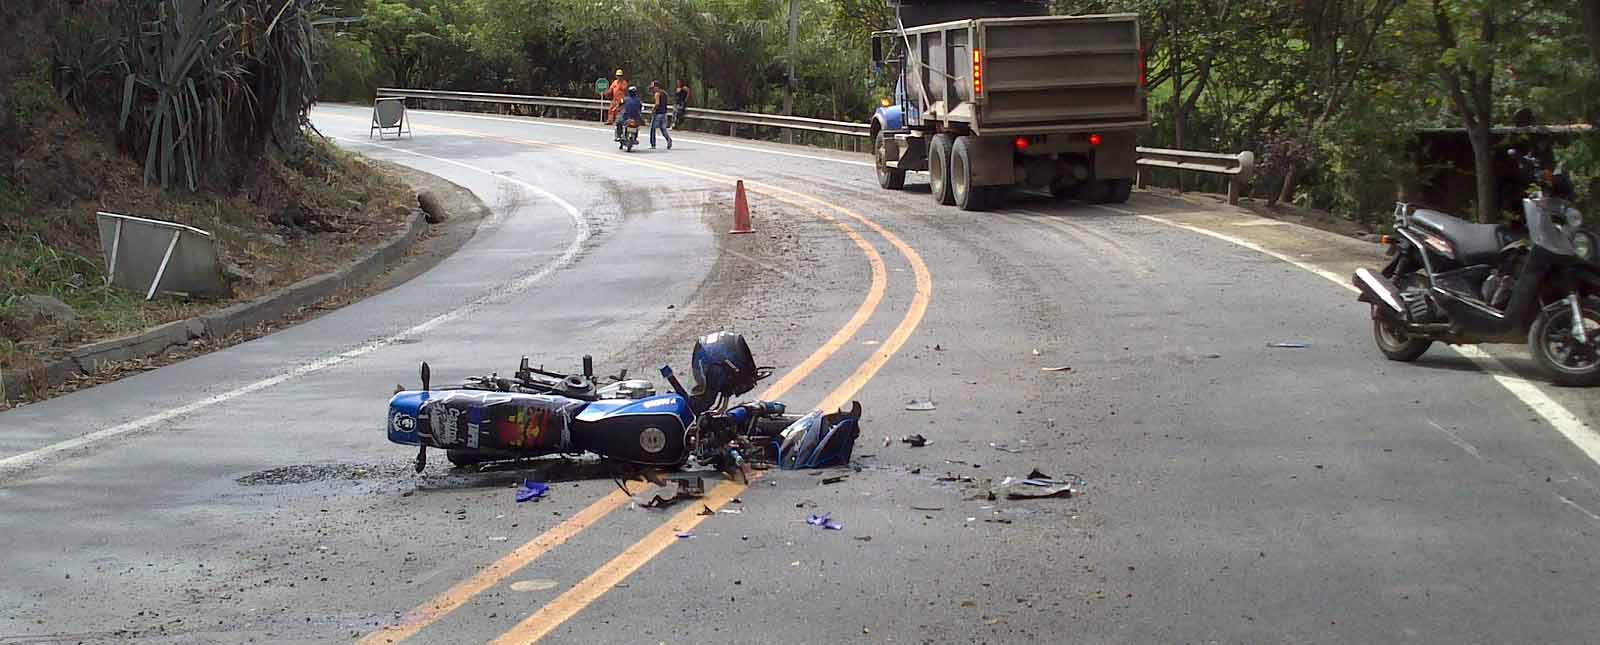 motorcycle down in road